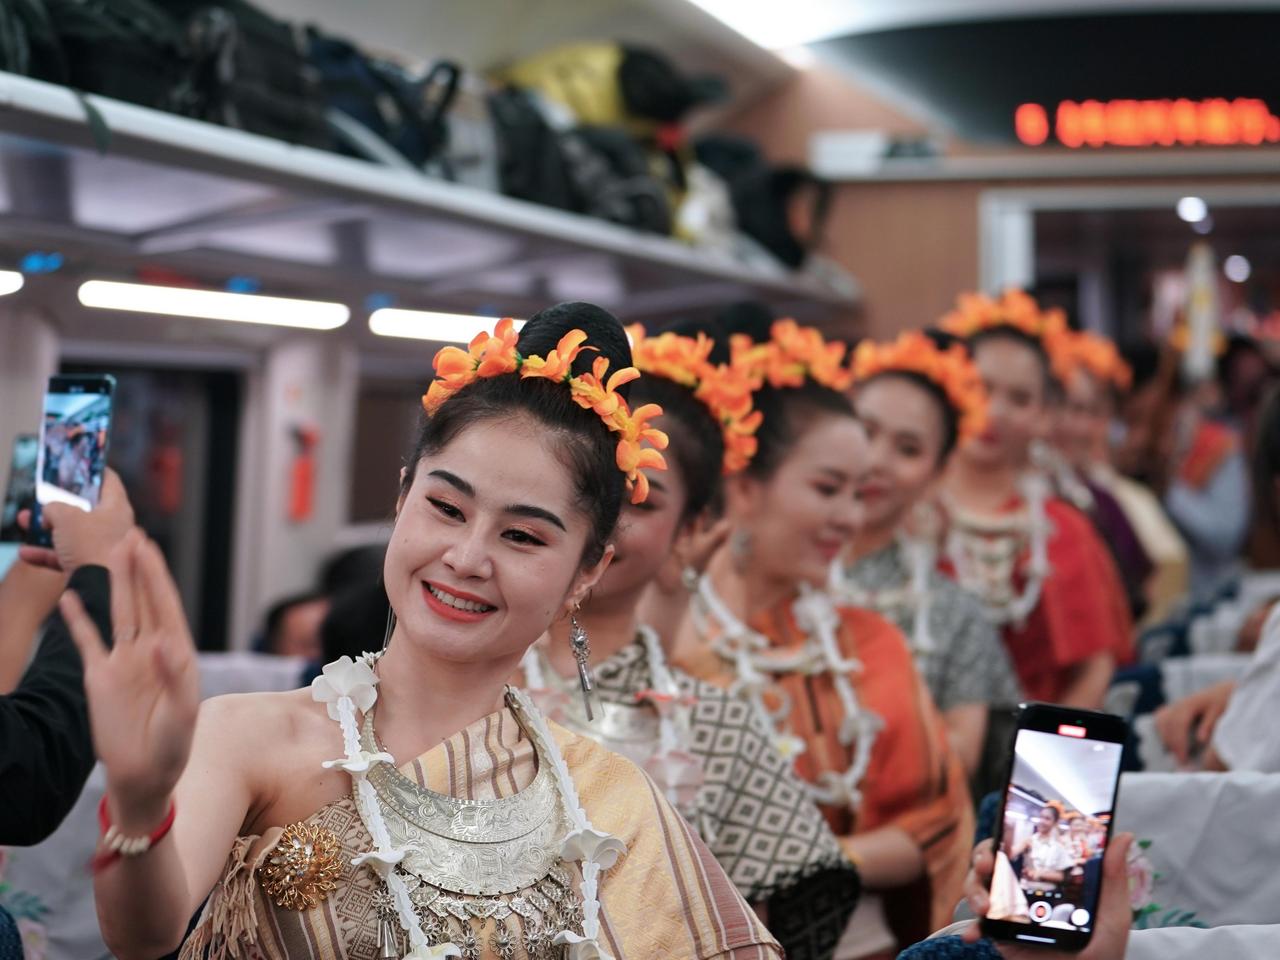 ทางรถไฟจีน-ลาว รองรับ 'ผู้โดยสารเดินทางข้ามพรมแดน' กว่า 180,000 ครั้ง